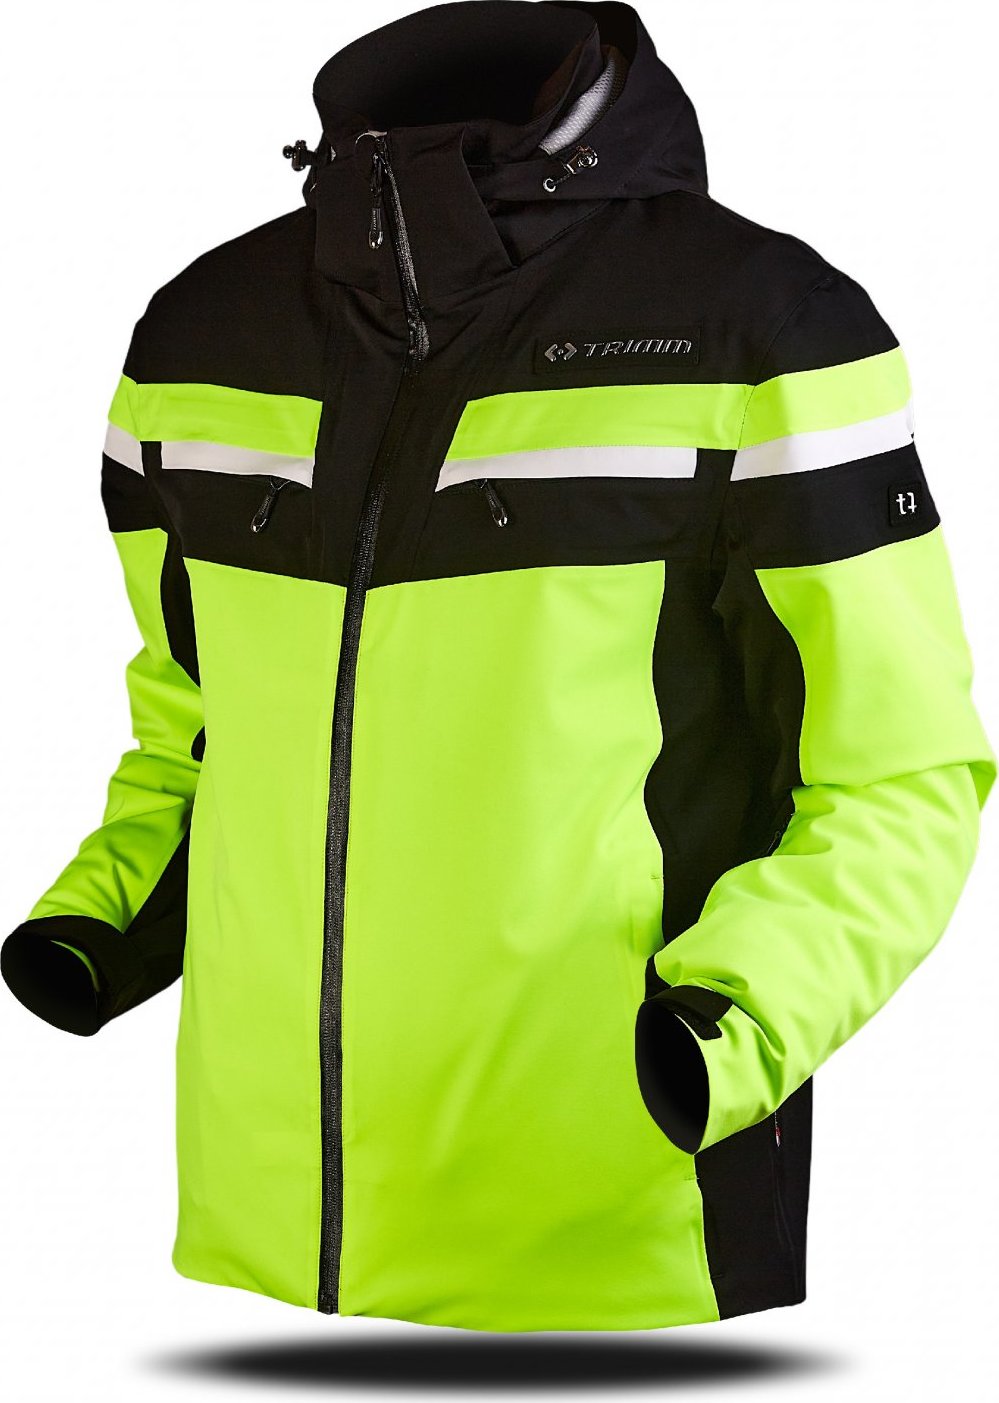 Pánská lyžařská bunda TRIMM Fusion žlutá Velikost: S, Barva: lemon/black/white